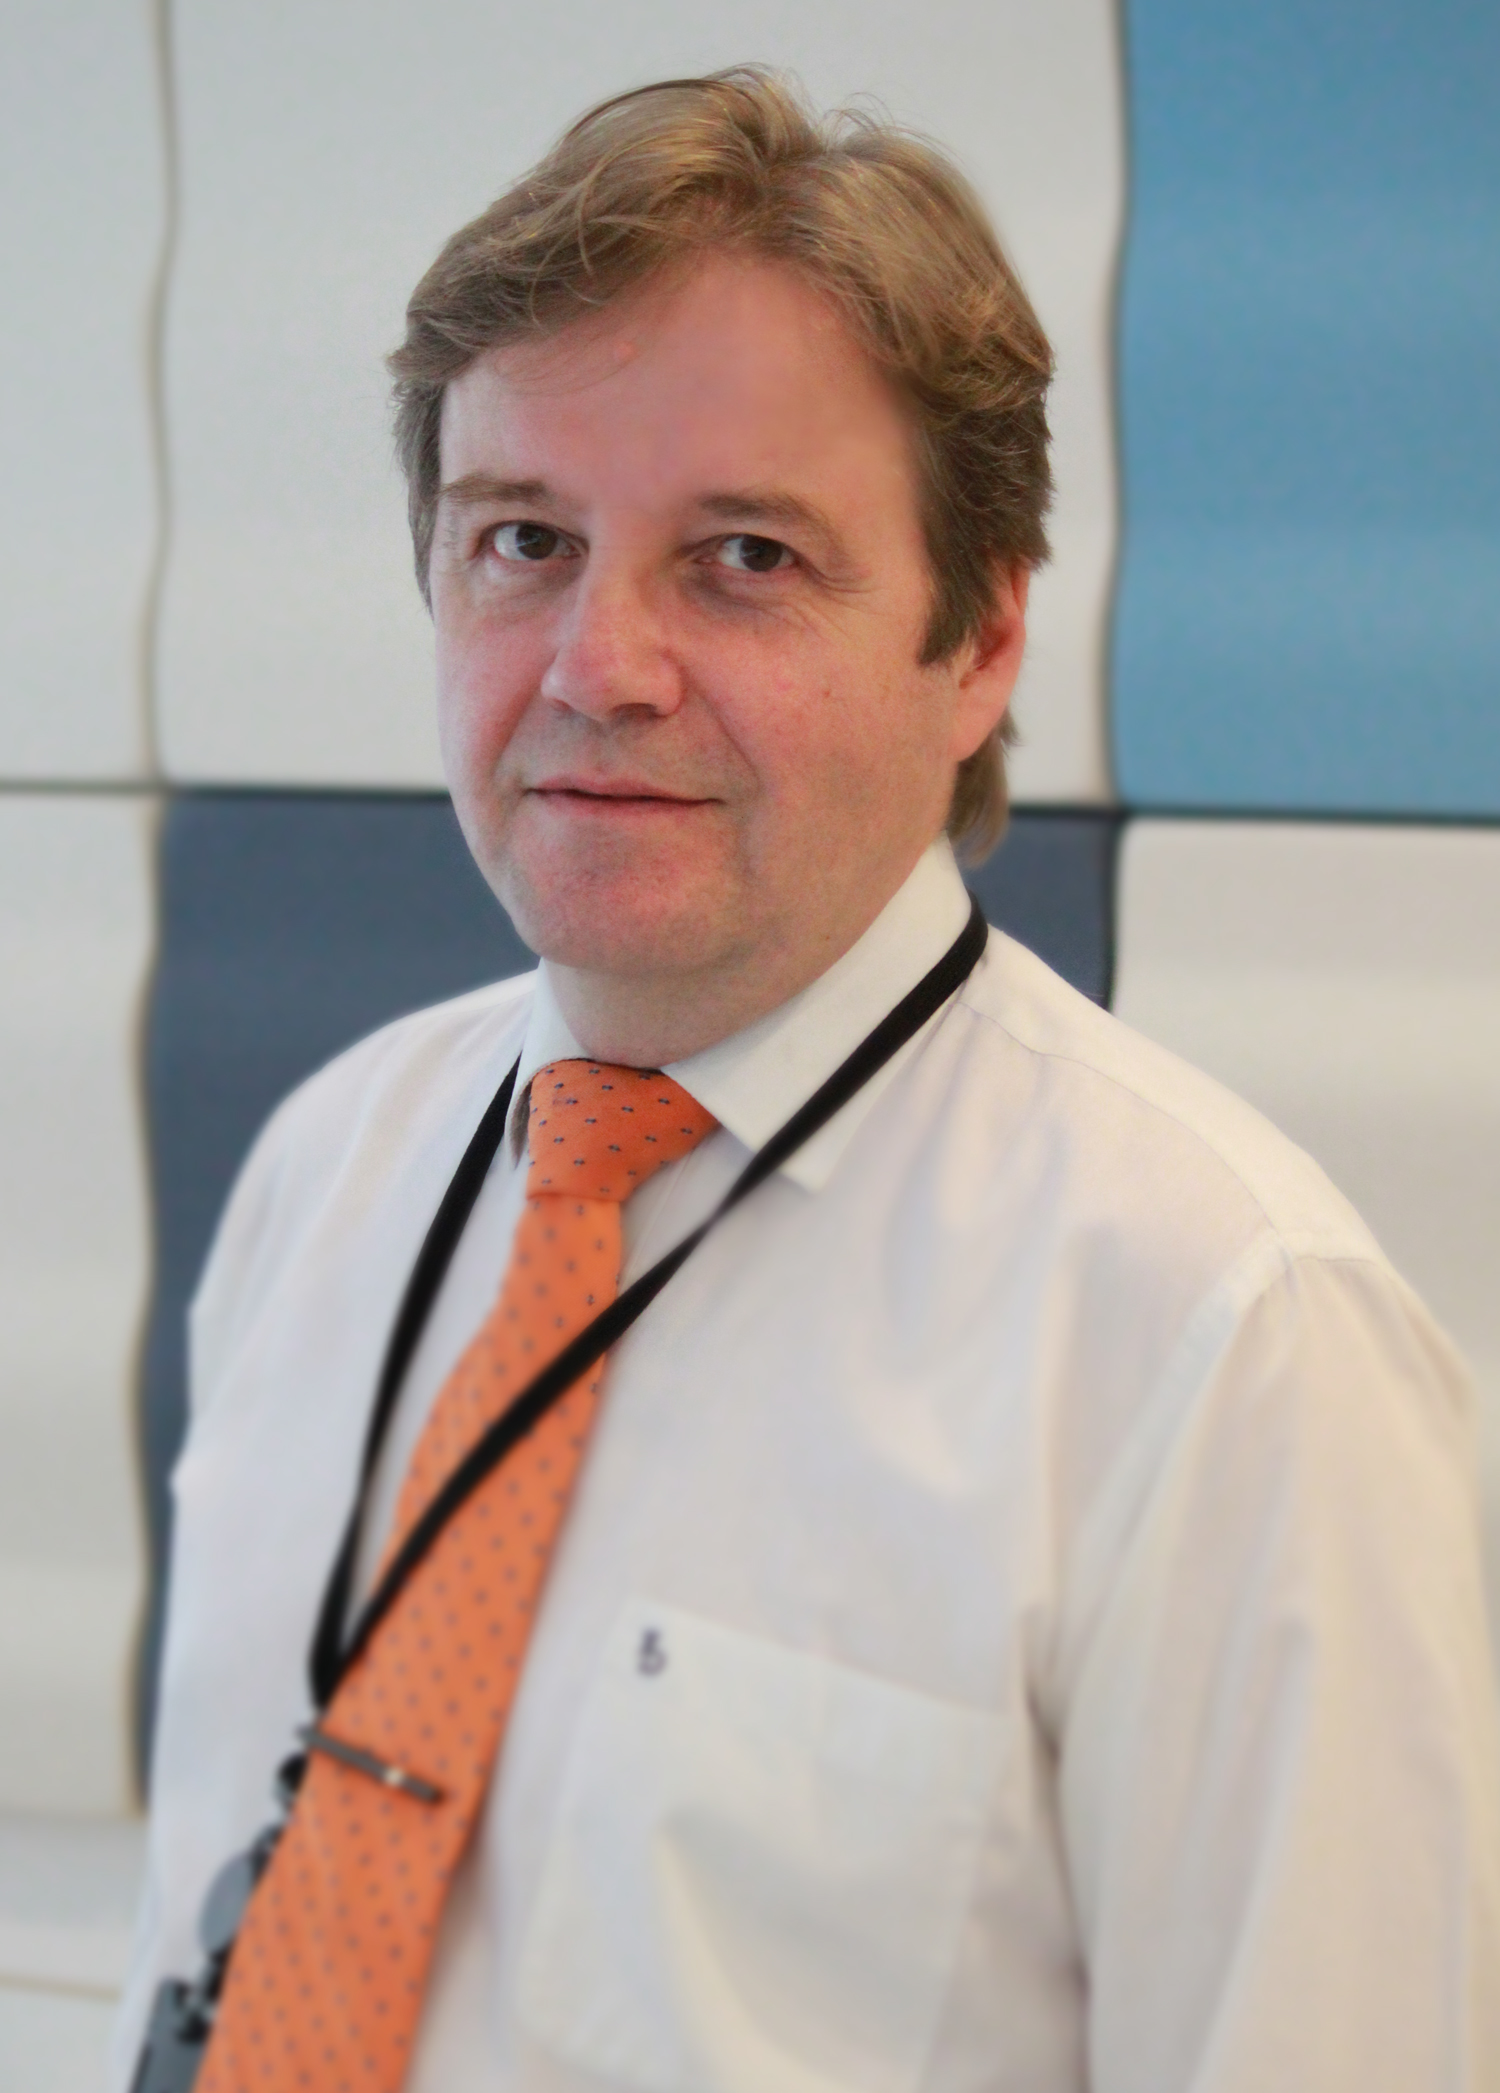 Jyri Ollila är specialsakkunnig inom fiskepolitik vid Finlands representation vid EU.